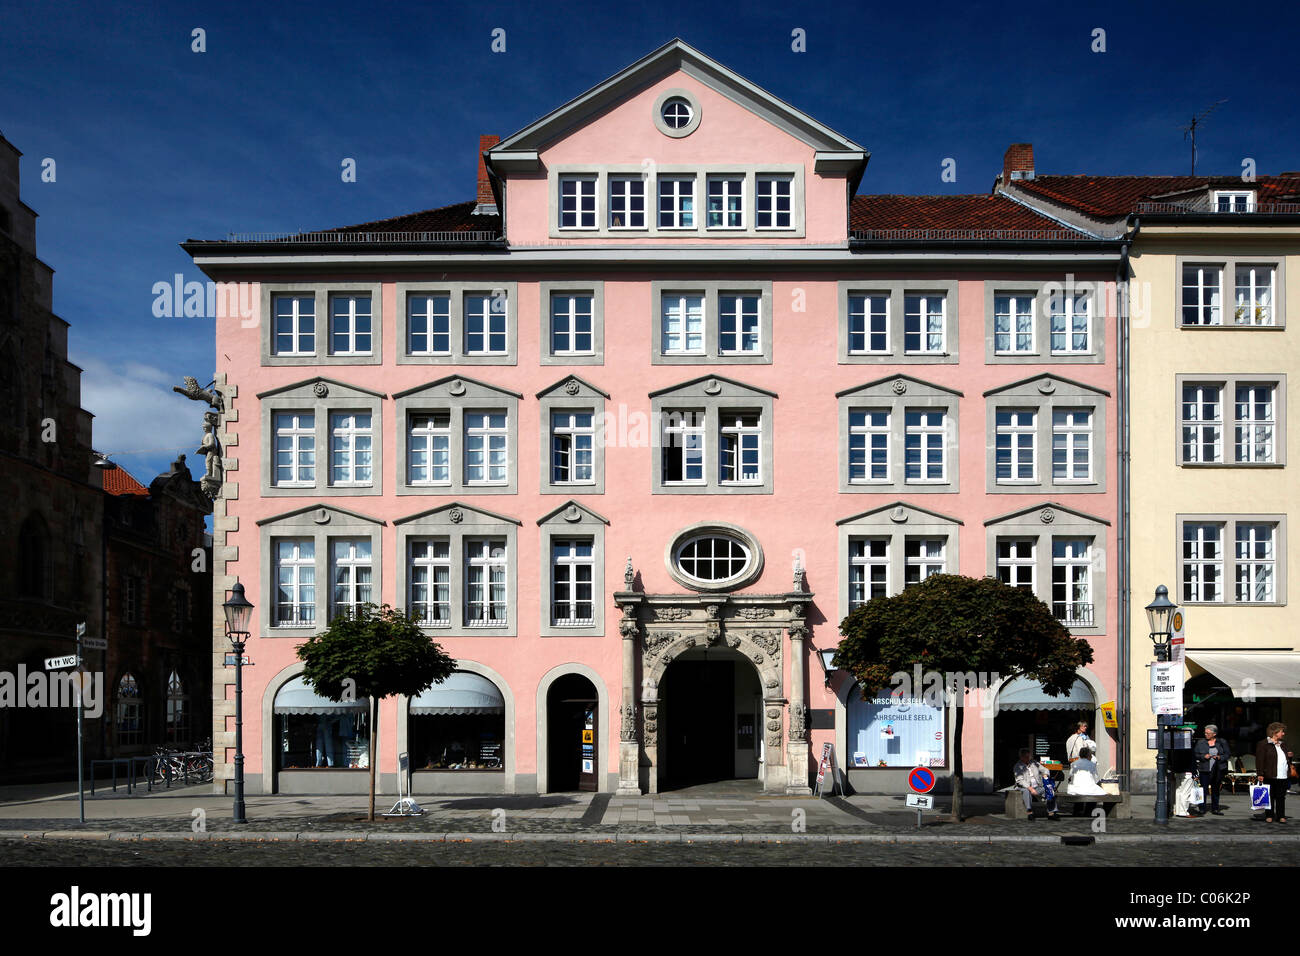 Stechinelli-Haus sulla piazza Altstadtmarkt, Braunschweig, Bassa Sassonia, Germania, Europa Foto Stock